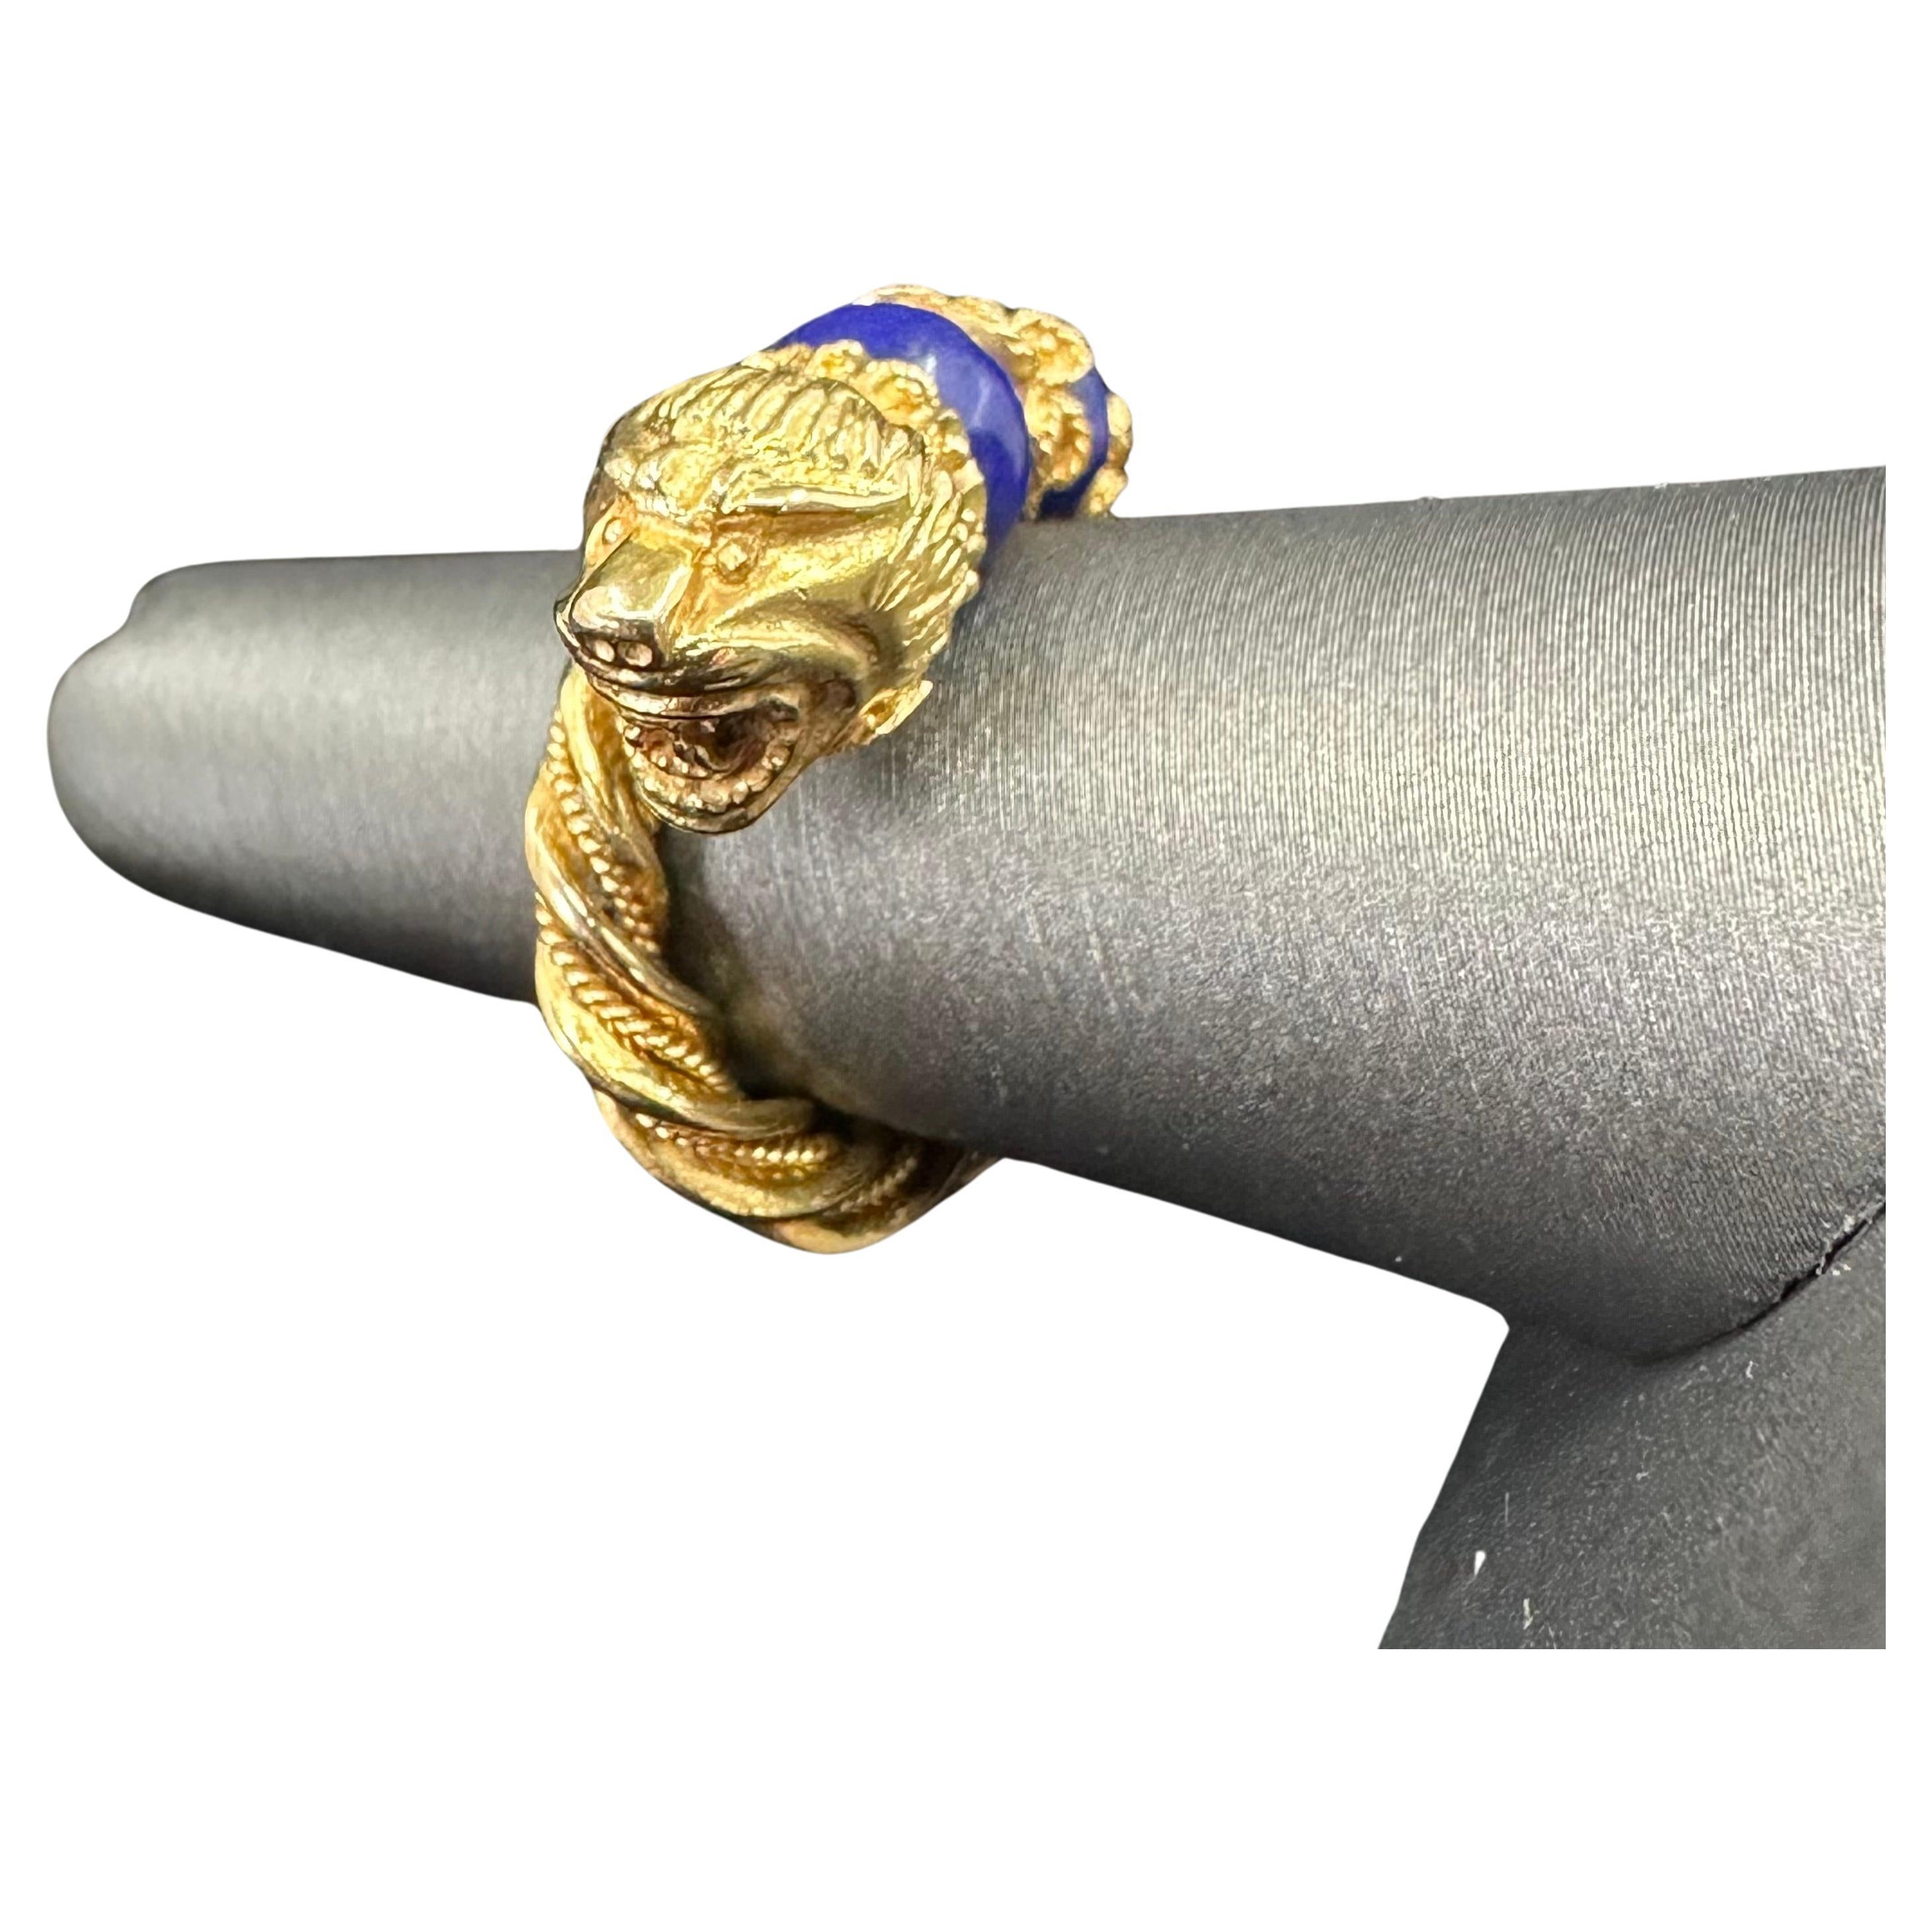 Zolotas 
Statement Ring 18K tiefes Gelbgold und 2 Lapis Lazuli Perlen zusammen, gedrehte goldene Corde, die sich um den Finger wickeln, offener Bandring, bequem
12 grans 
Größe 6
